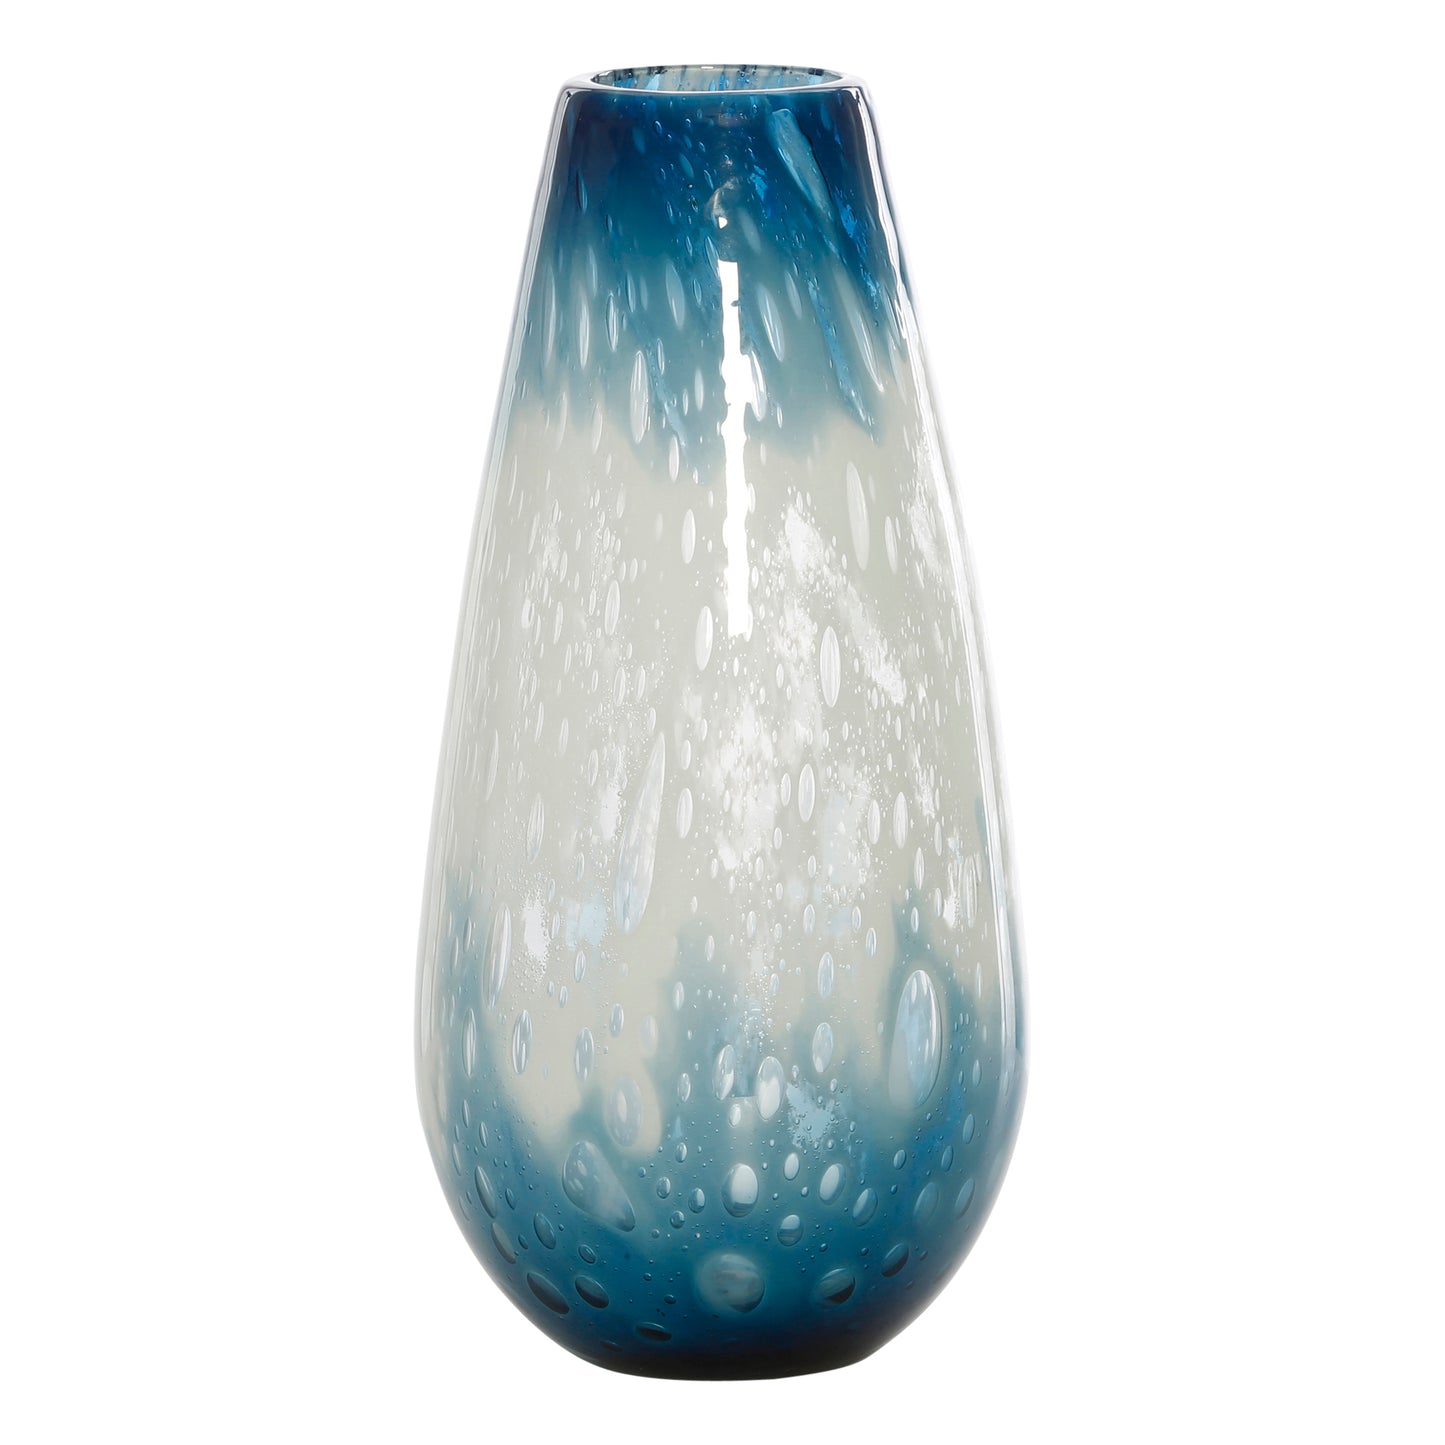 Portsmouth Vase Blue & White - Large